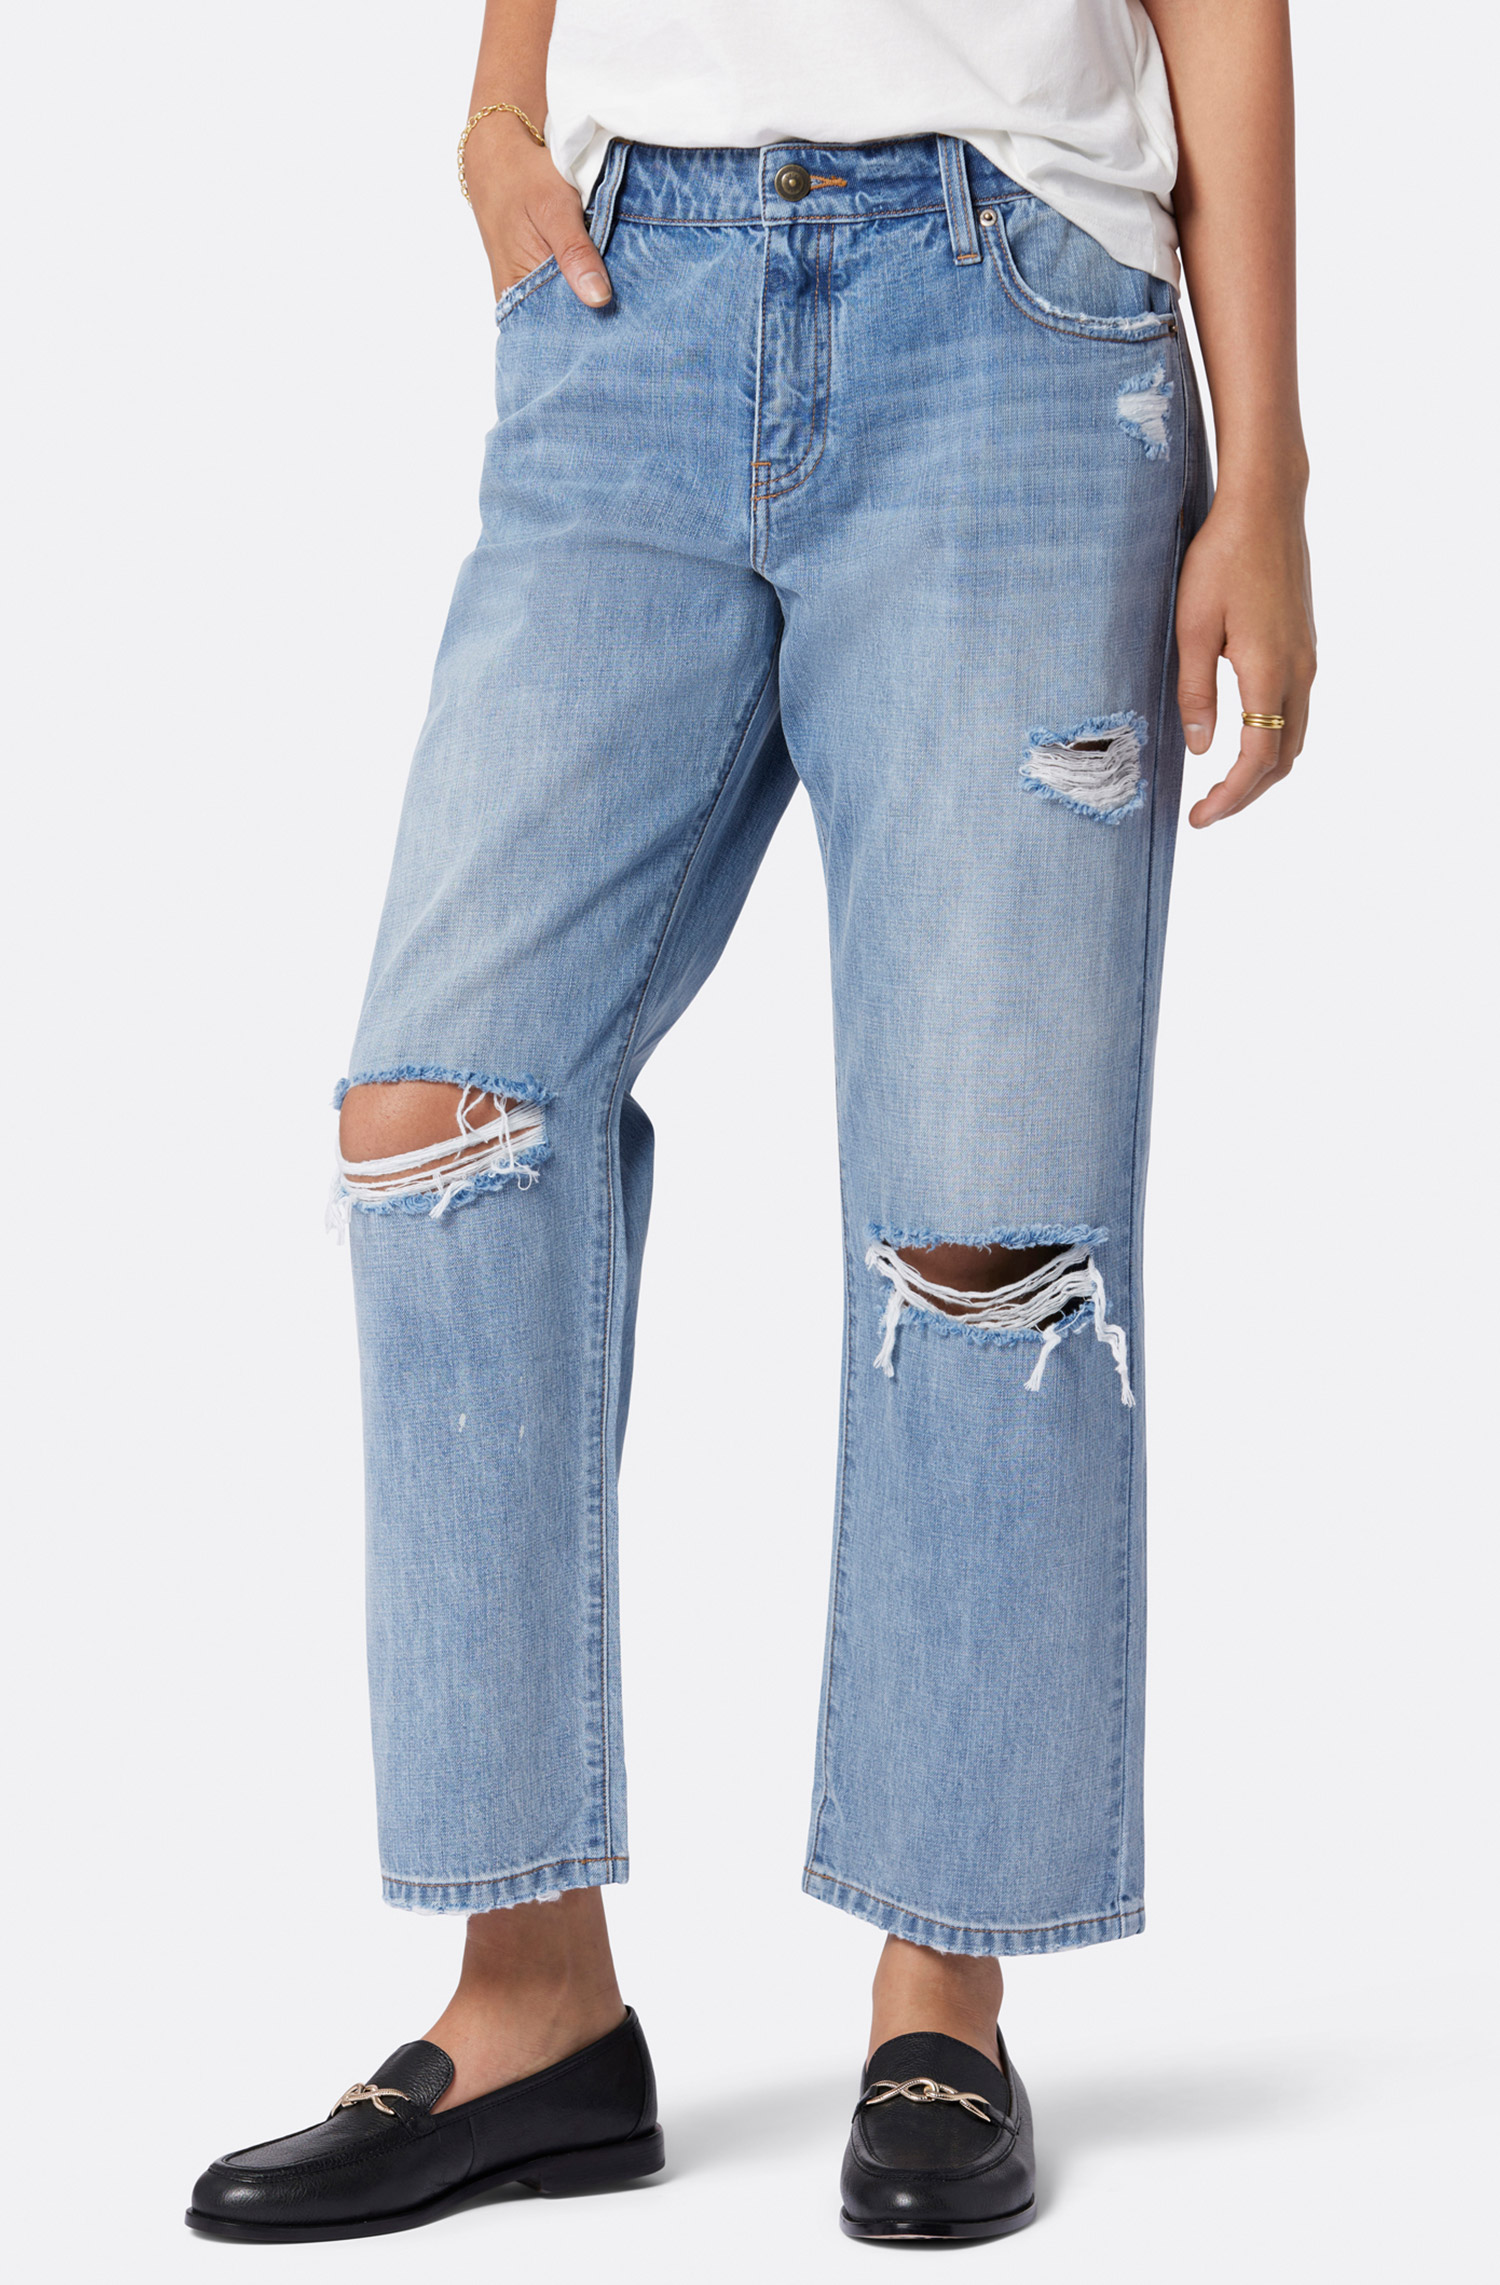 Denim - Denim Pants, Jeans, Wide Leg Jeans - Joie